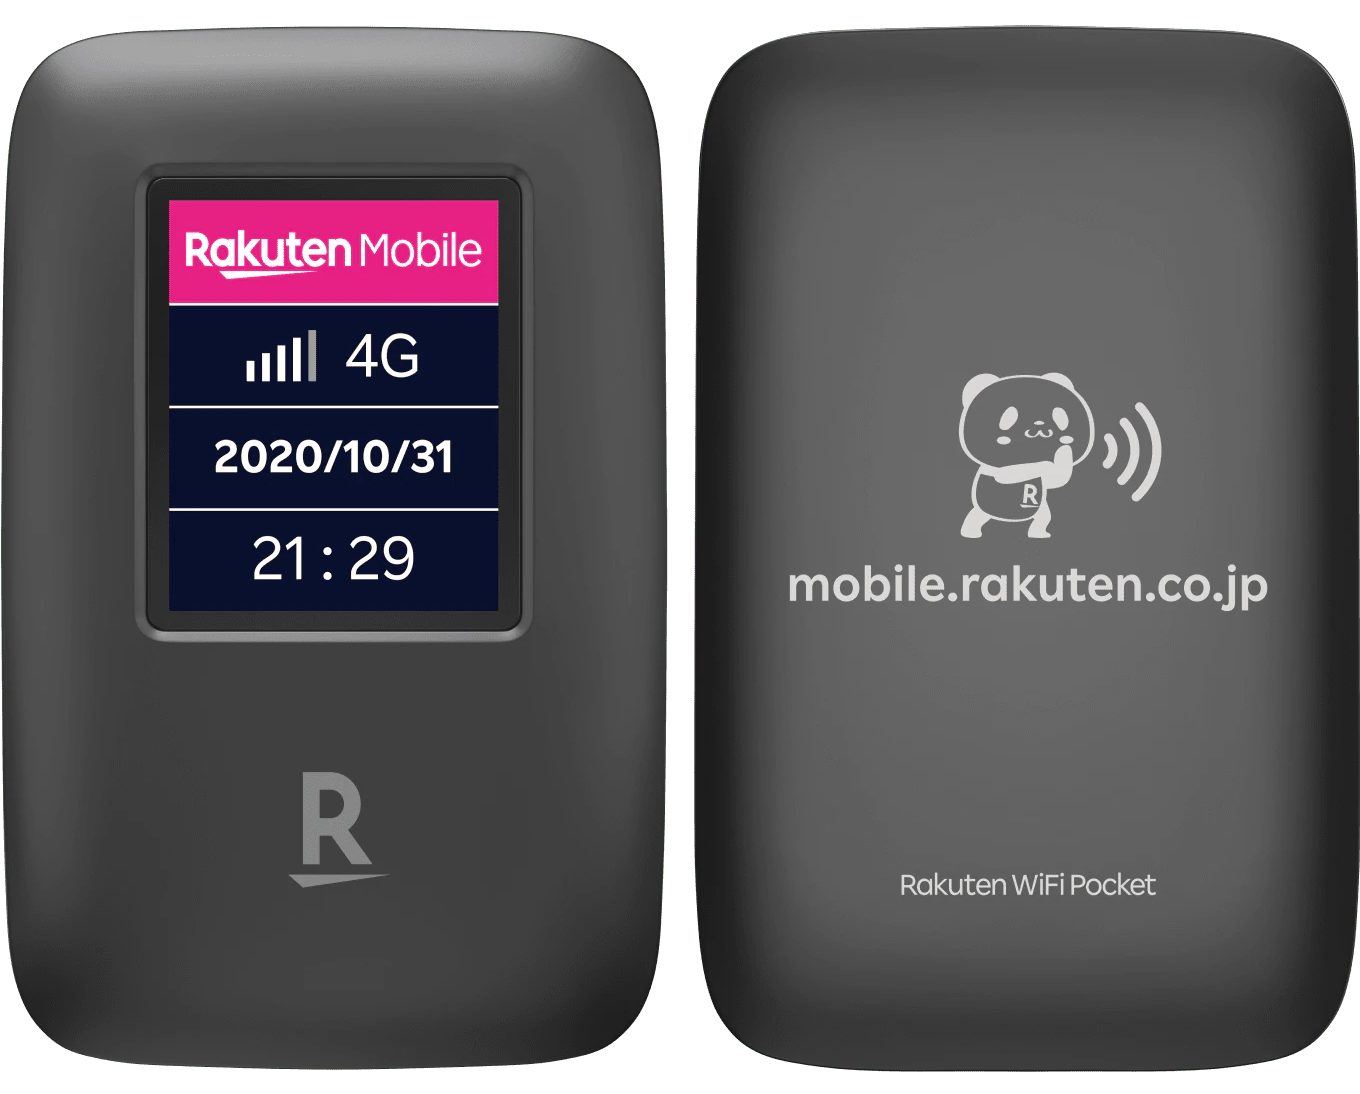 【東京から即日発送】新品 Rakuten WiFi Pocket ブラック 黒